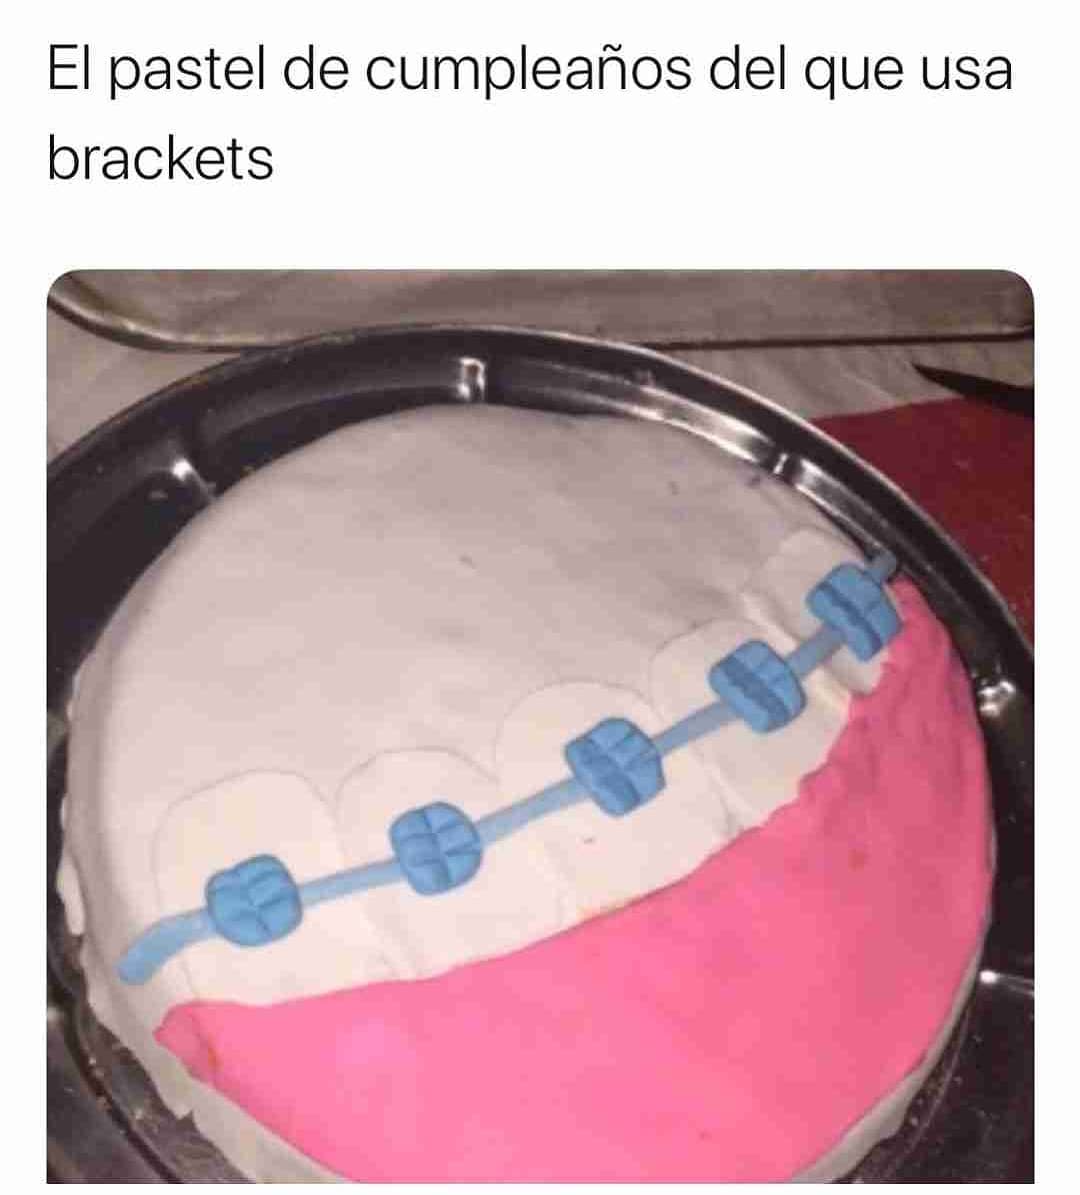 El pastel de cumpleaños del que usa brackets.